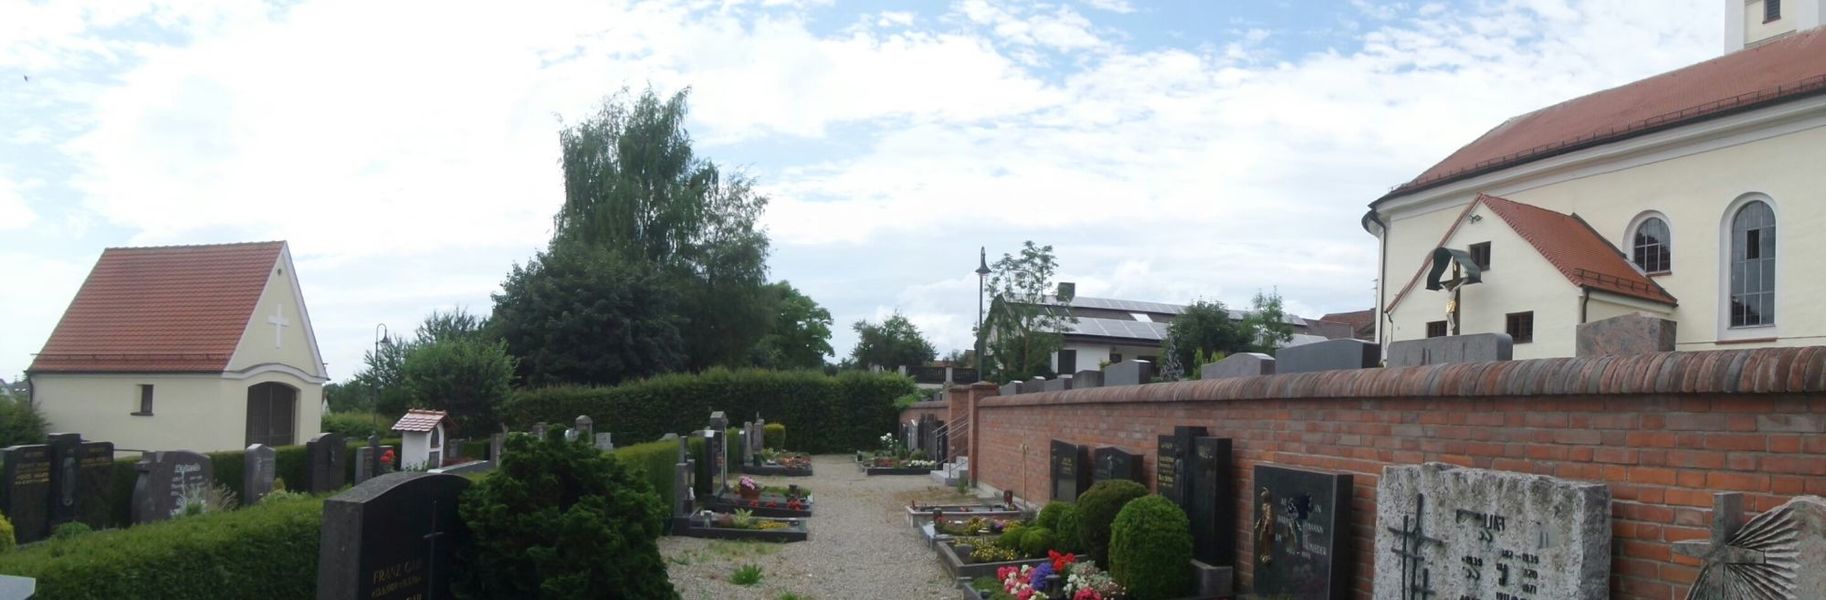 Friedhof Röfingen